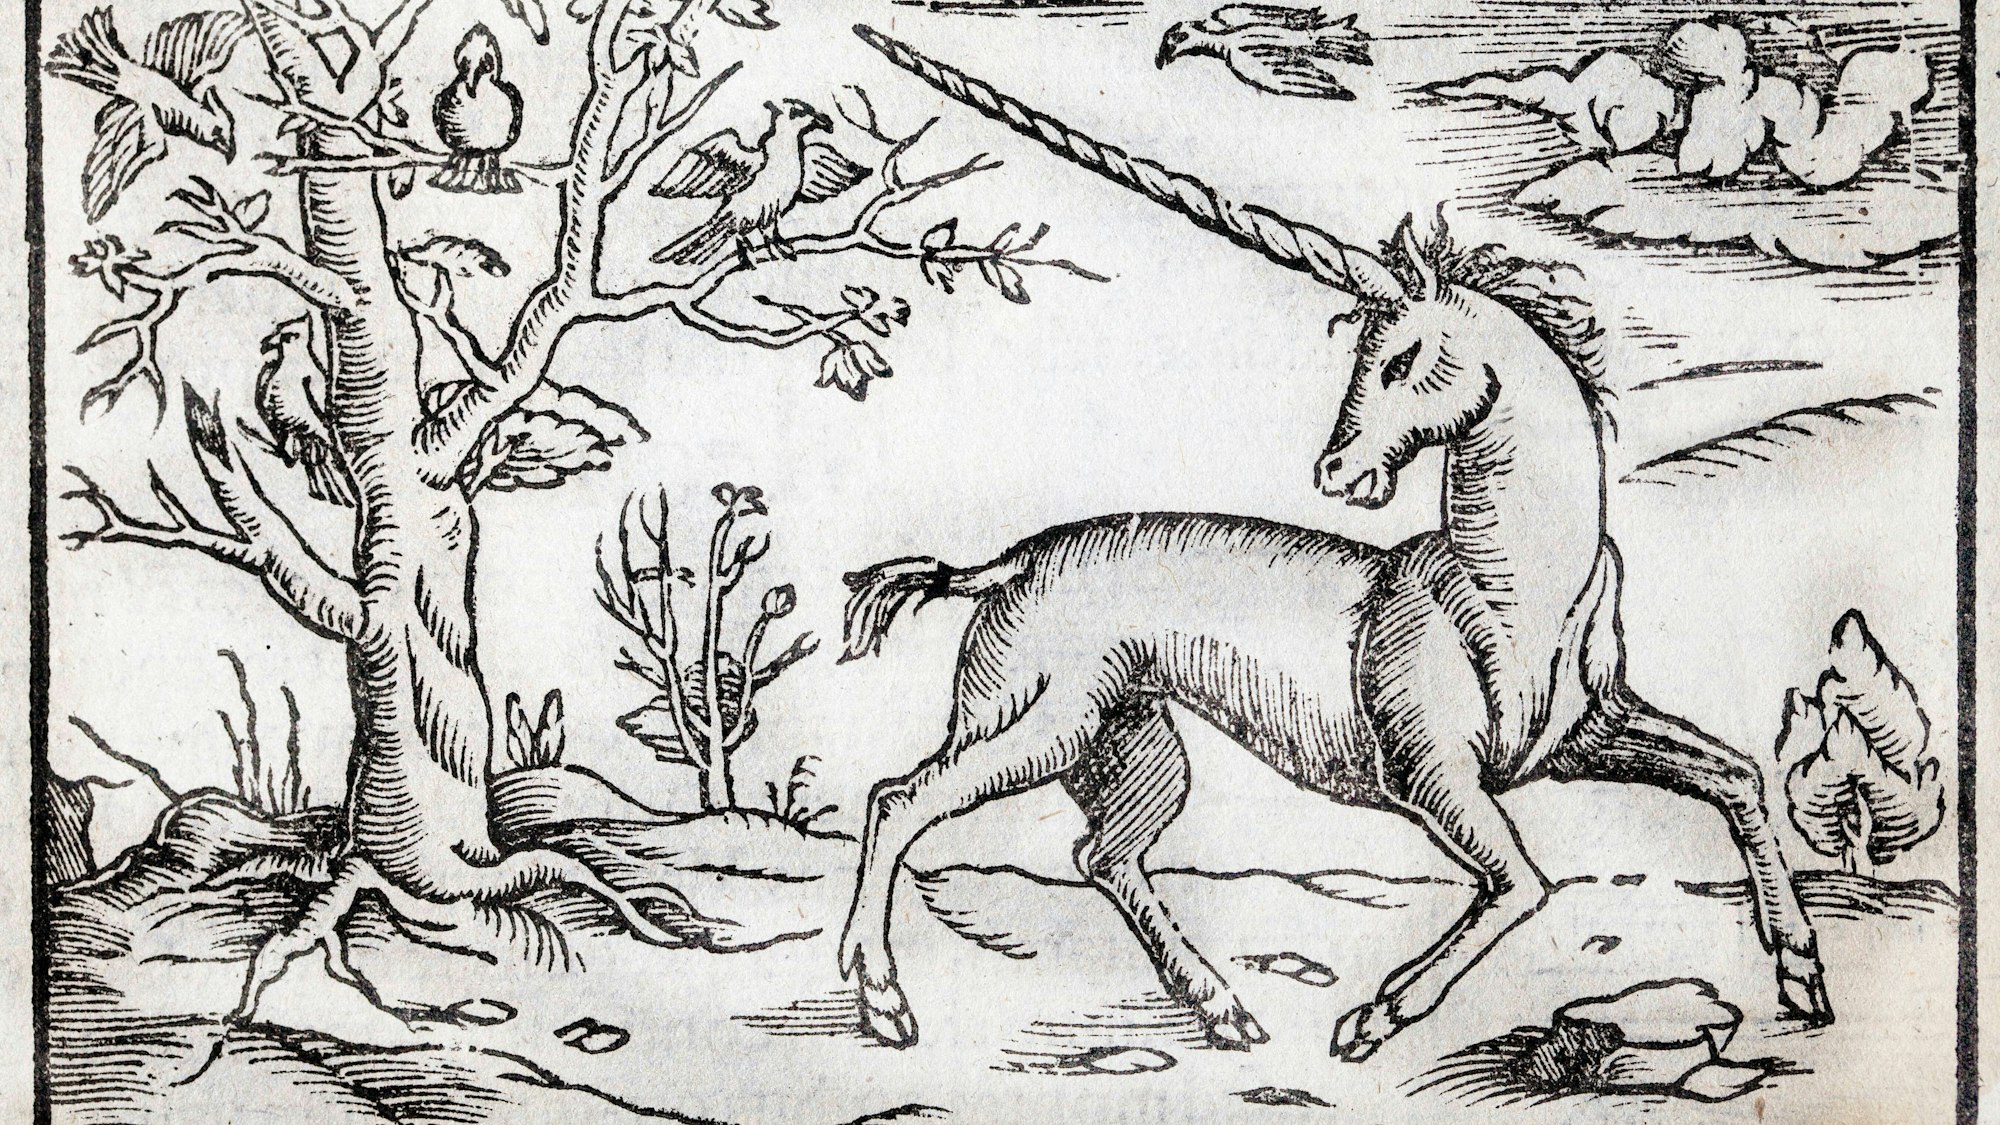 Holzschnitt von Sebastian Münster um 1560. Der Glaube an Einhörner lässt sich bis in die frühe Neuzeit nachweisen. Zu sehen ist ein Einhorn in einer Landschaft mit Bäumen, Vögeln und Wolken.